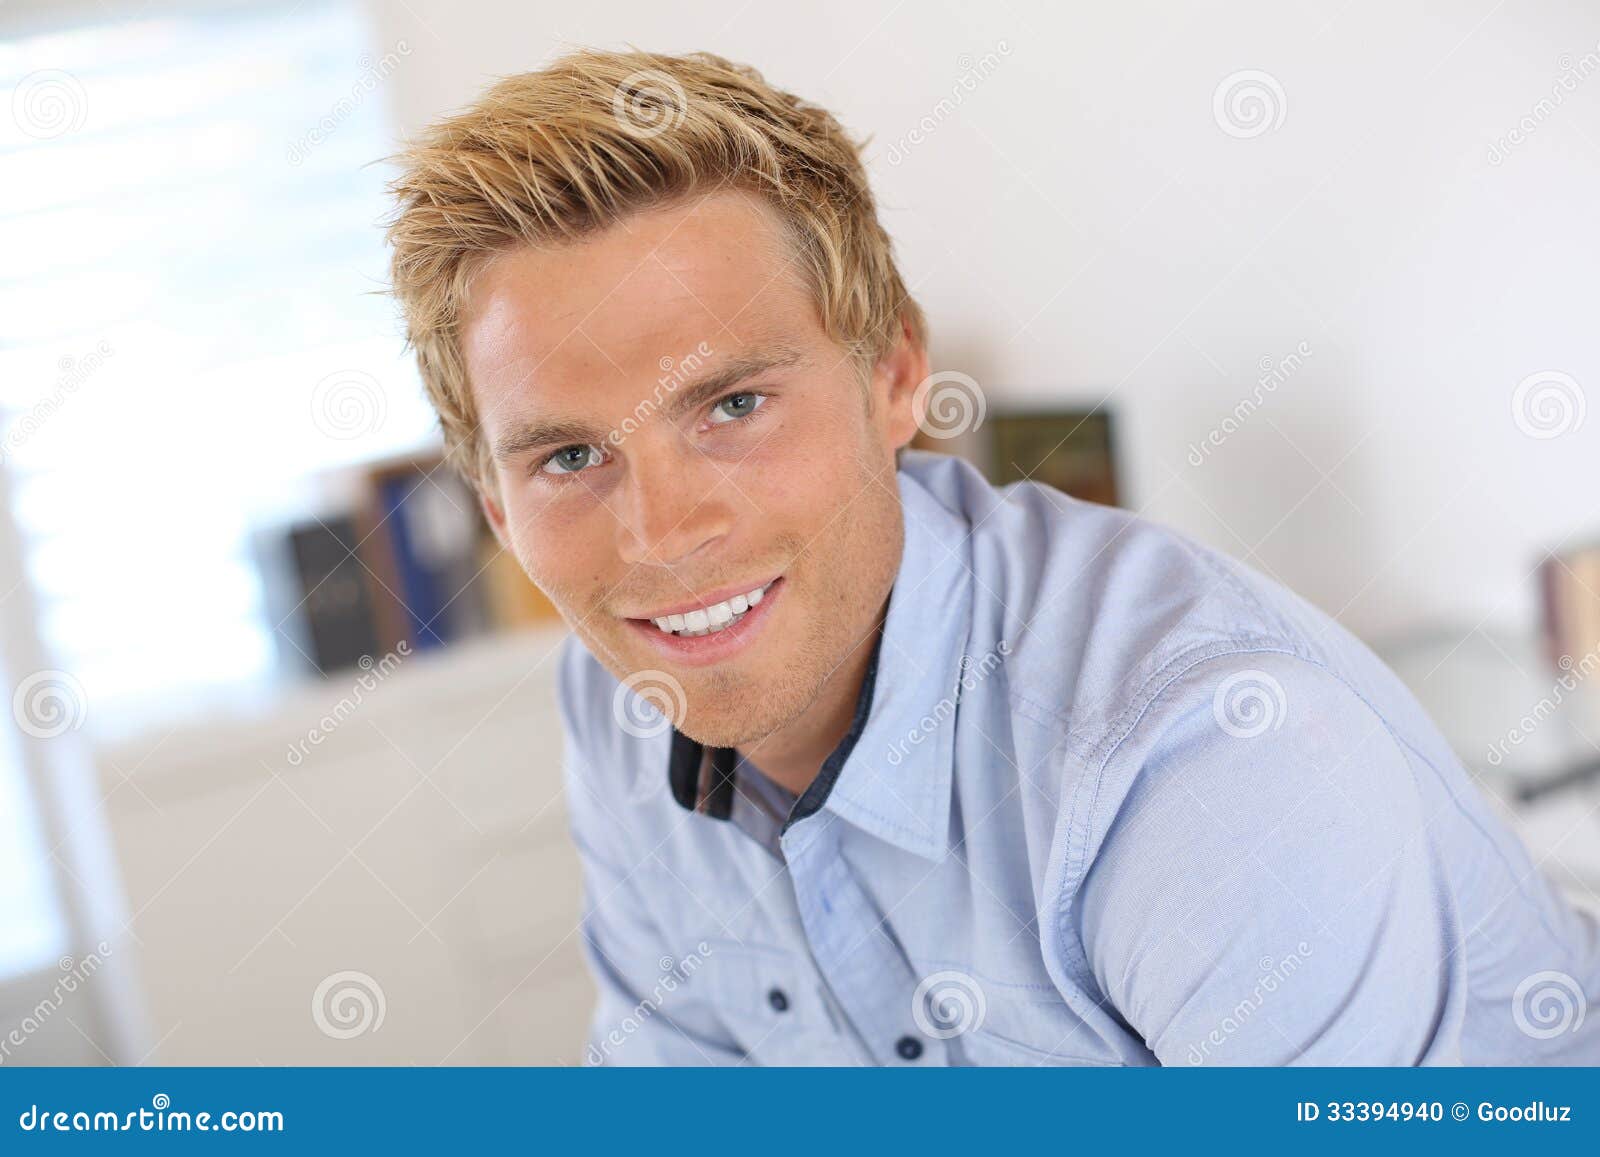 Blaue augen braun blond männlich Augenfarbe: Überraschende